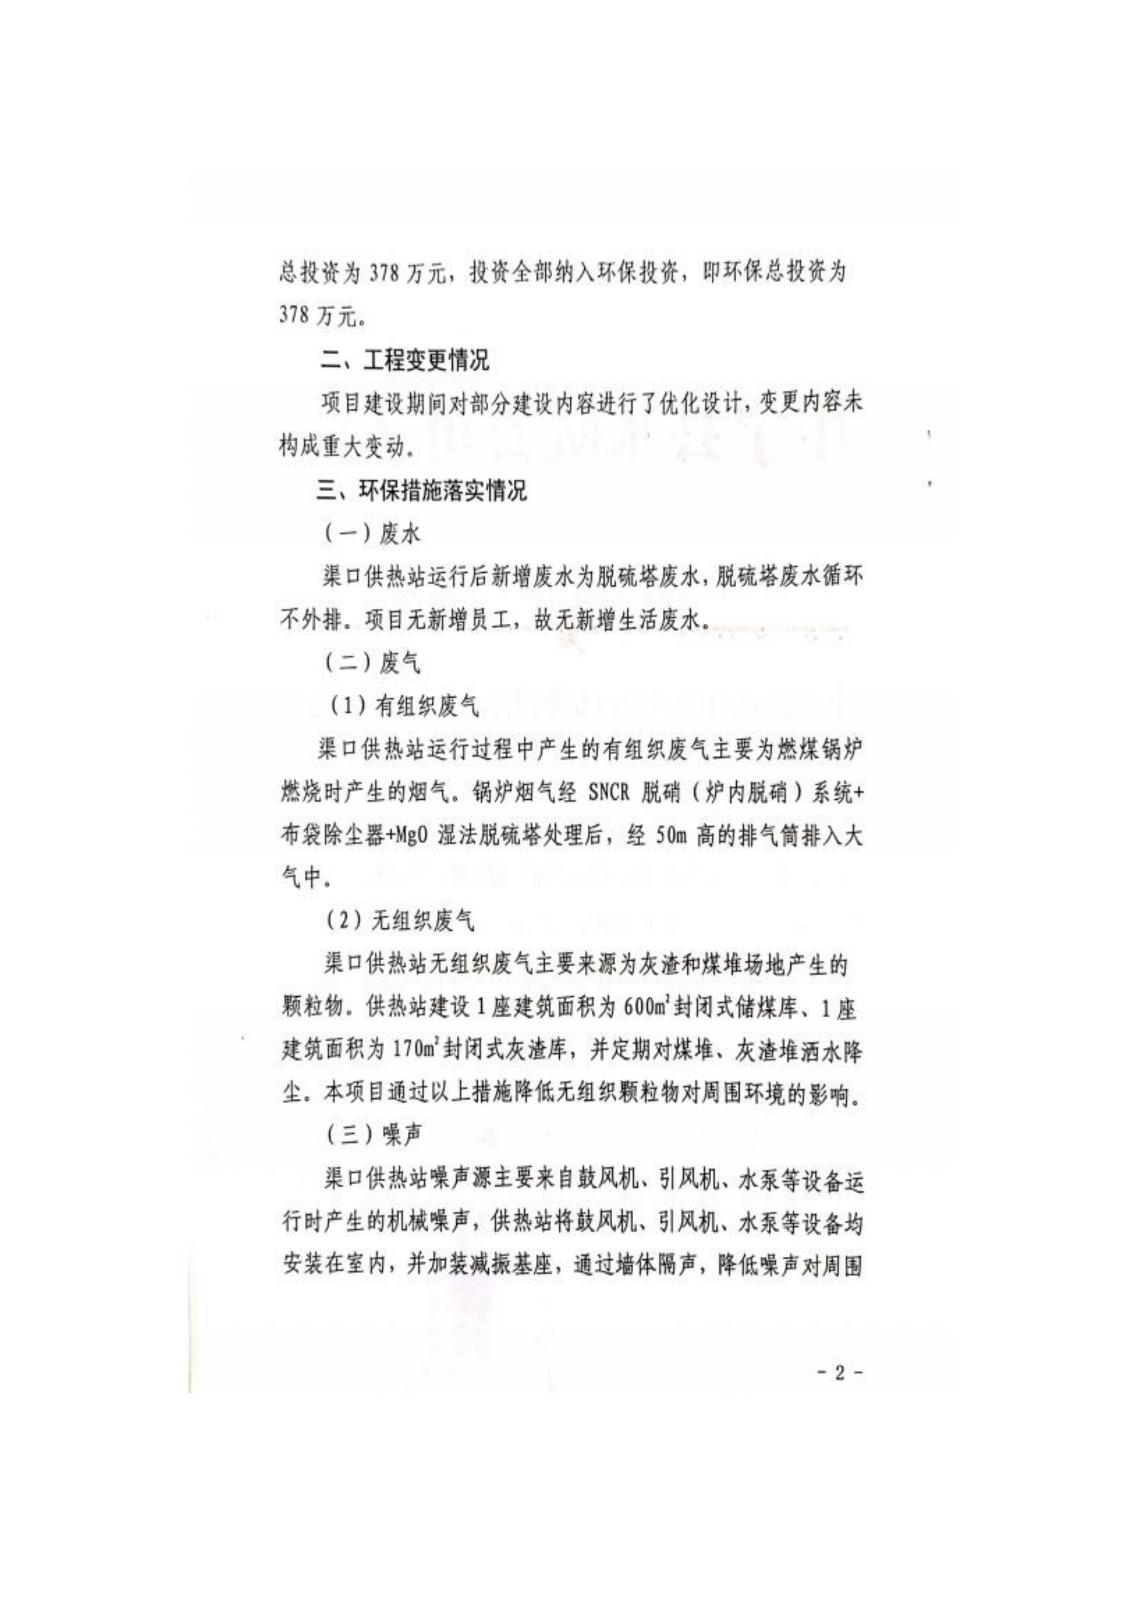 寧夏元創安環科技有限公司